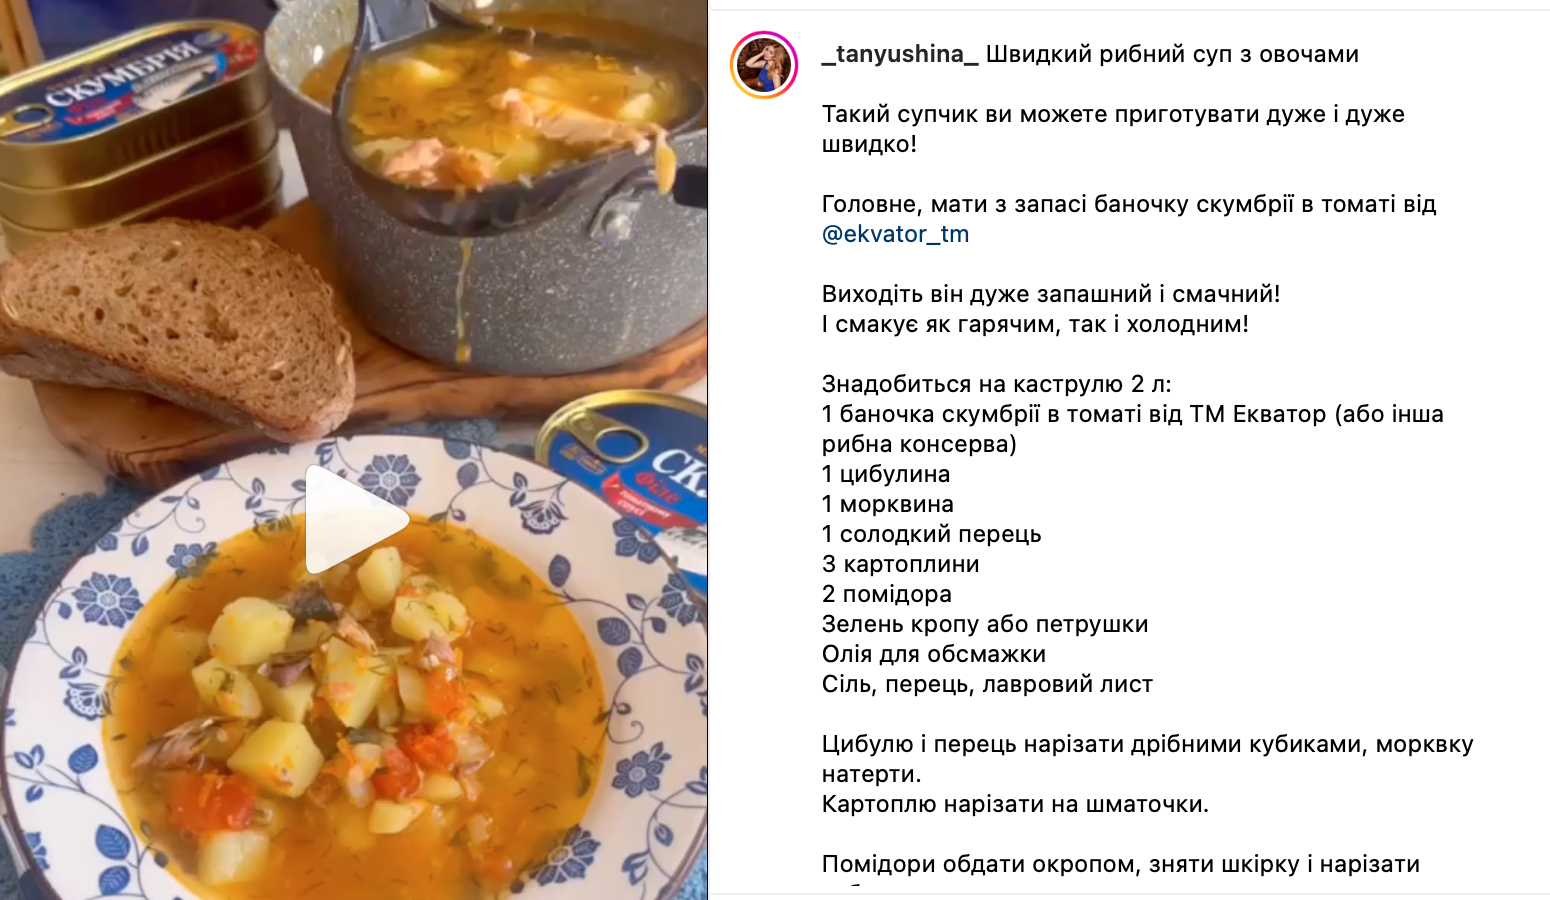 Рецепт супу